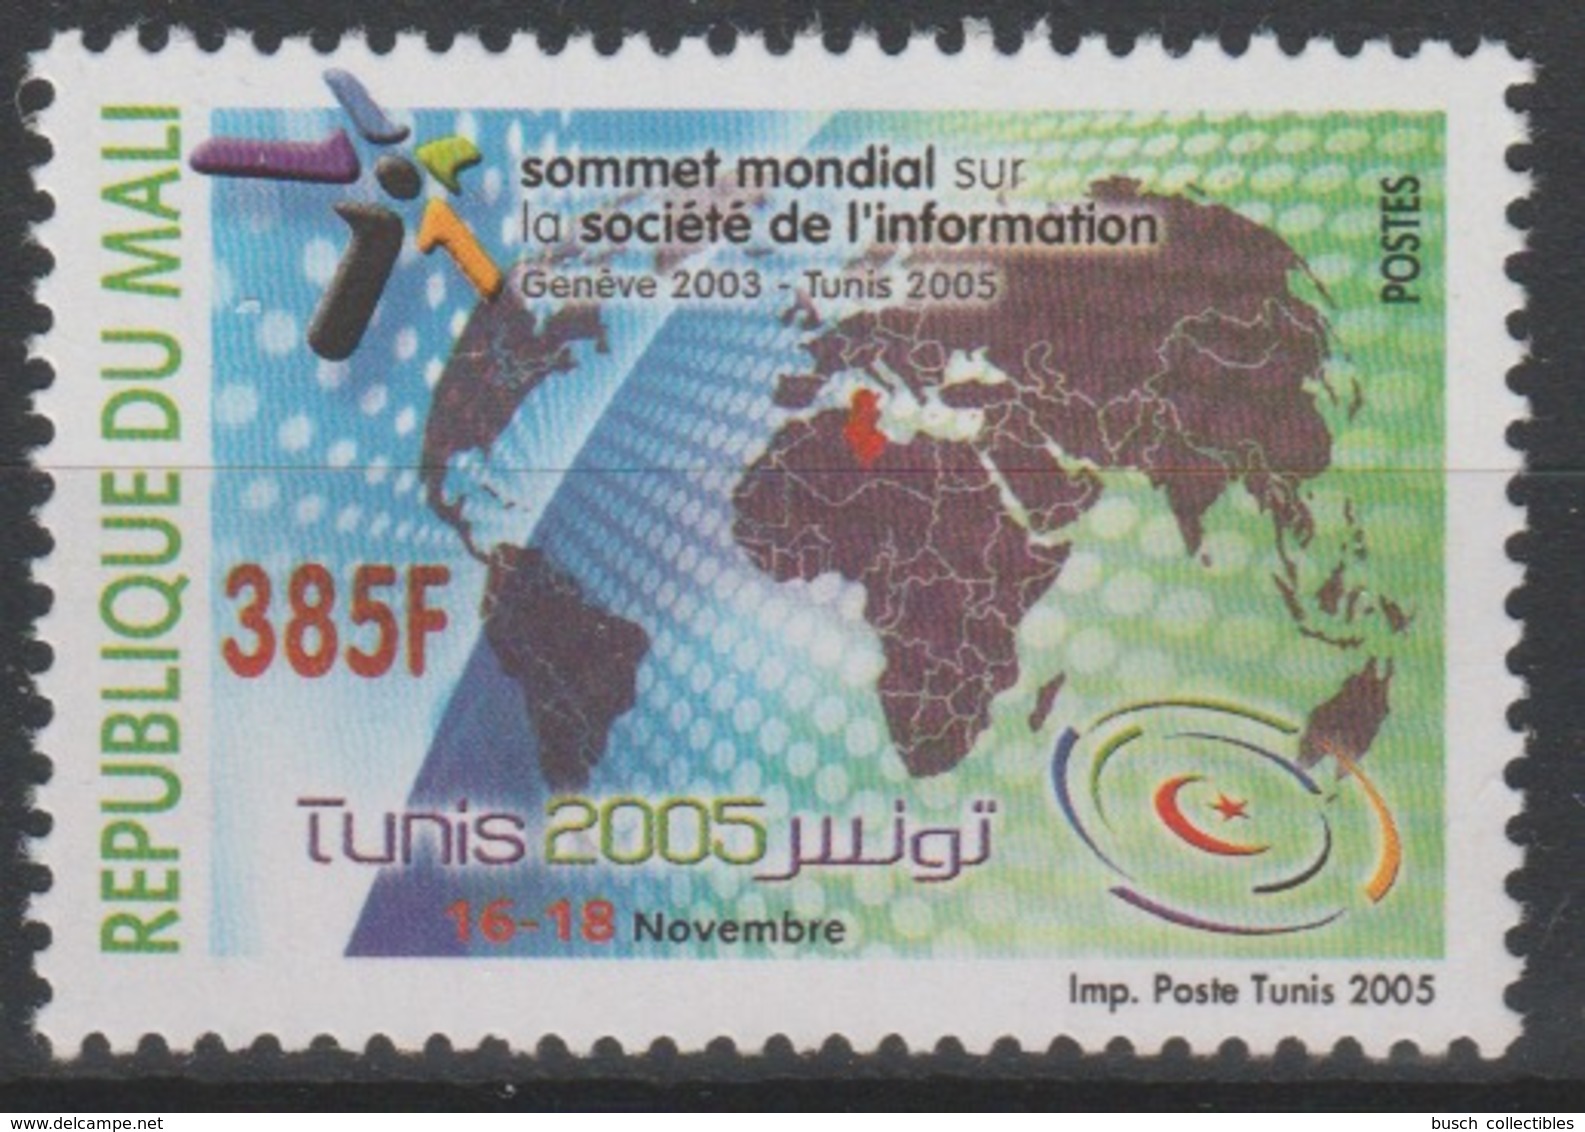 Mali 2005 Mi. 2618 Sommet Mondial Sur La Société De L'Information Map Landkarte Carte Summit 1 Val. - Mali (1959-...)